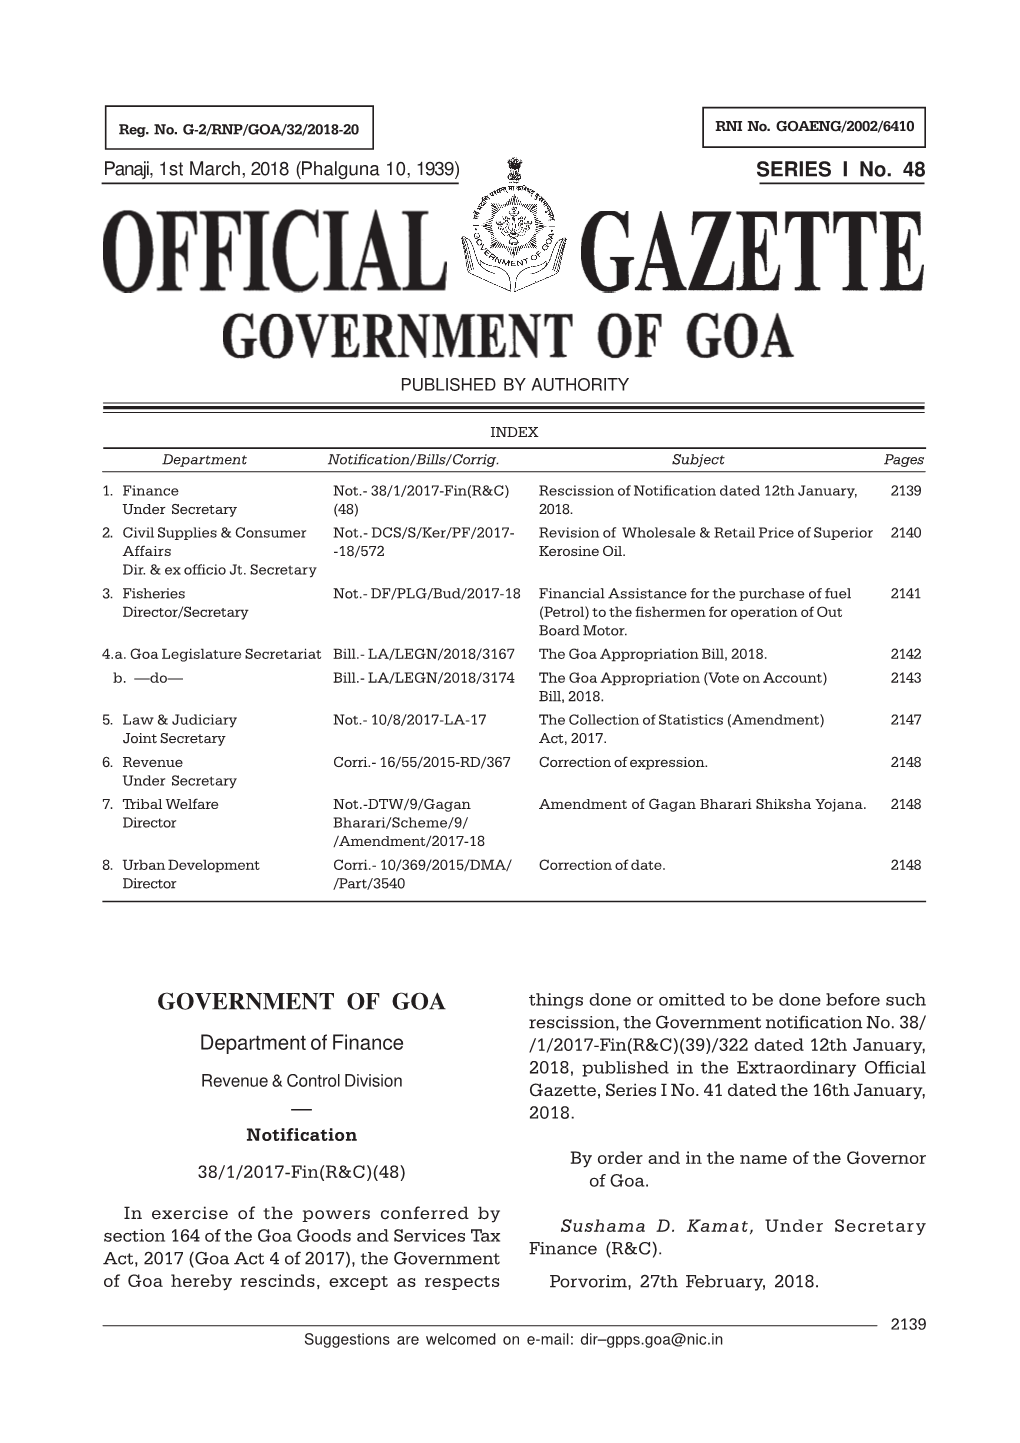 Sr. I. Gazette No. 48.Pmd